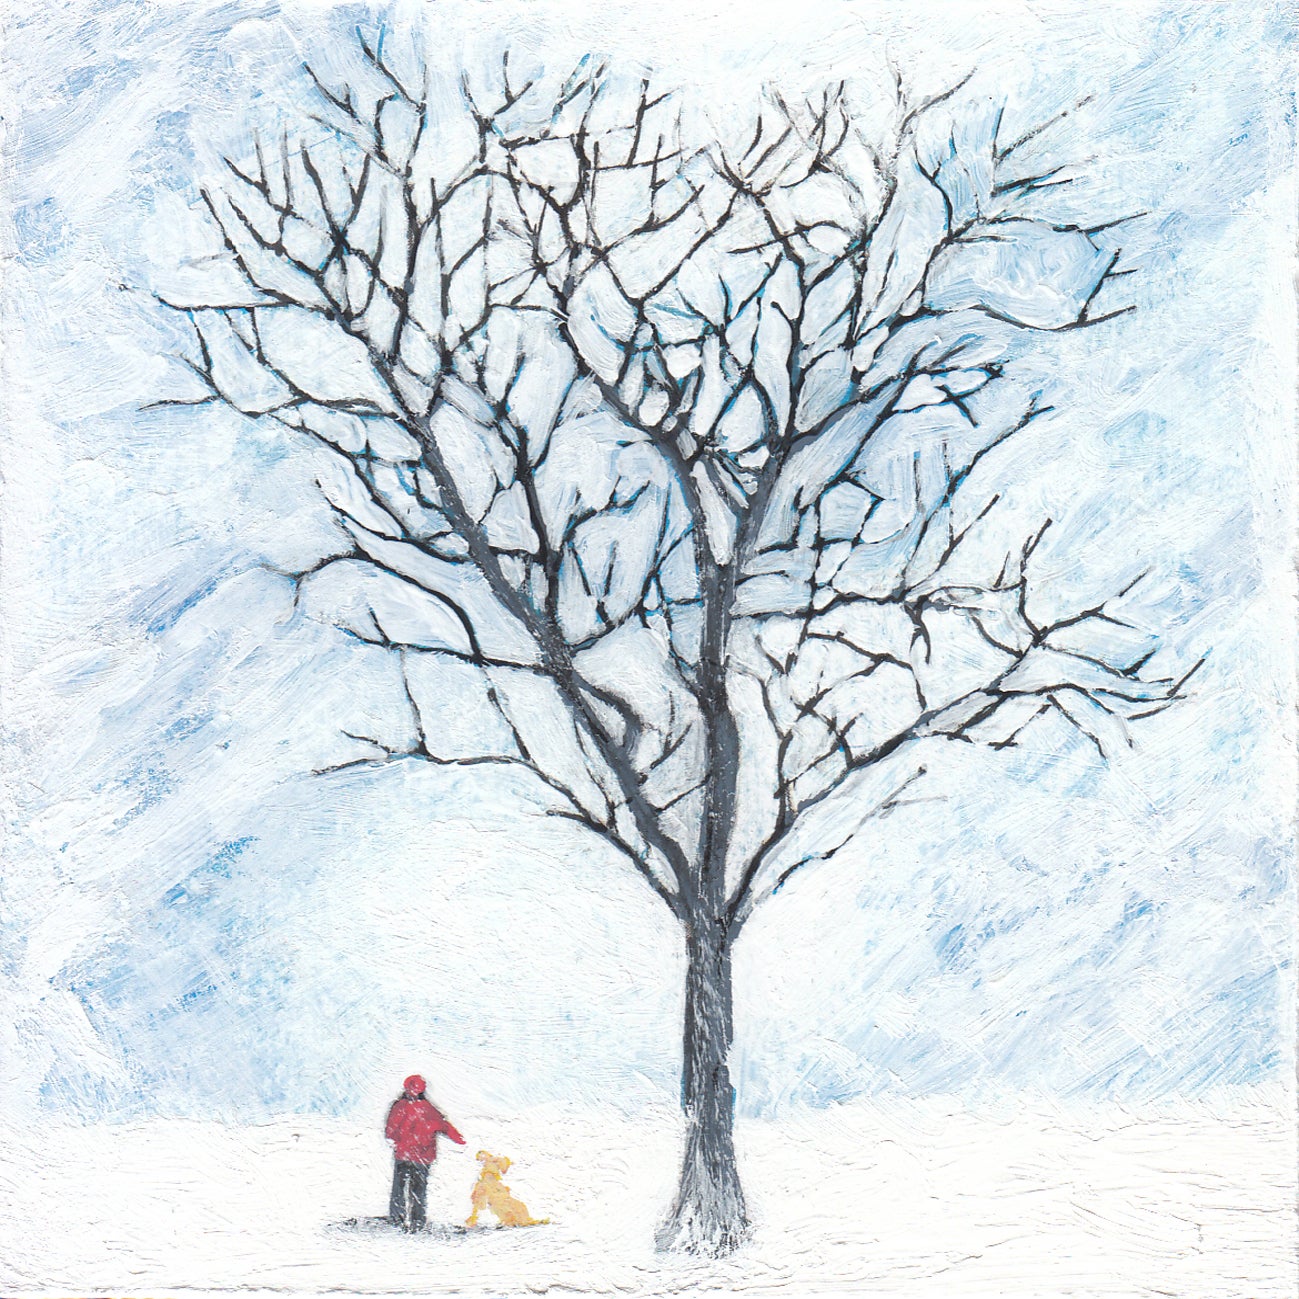 Familiar II par Henry Wlash [2021]

Familiar II de Henry Walshe est une peinture acrylique originale sur panneau de bois qui représente un homme et un chien lors d'une promenade hivernale. Le travail de Henry Walshe commence par des instantanés de